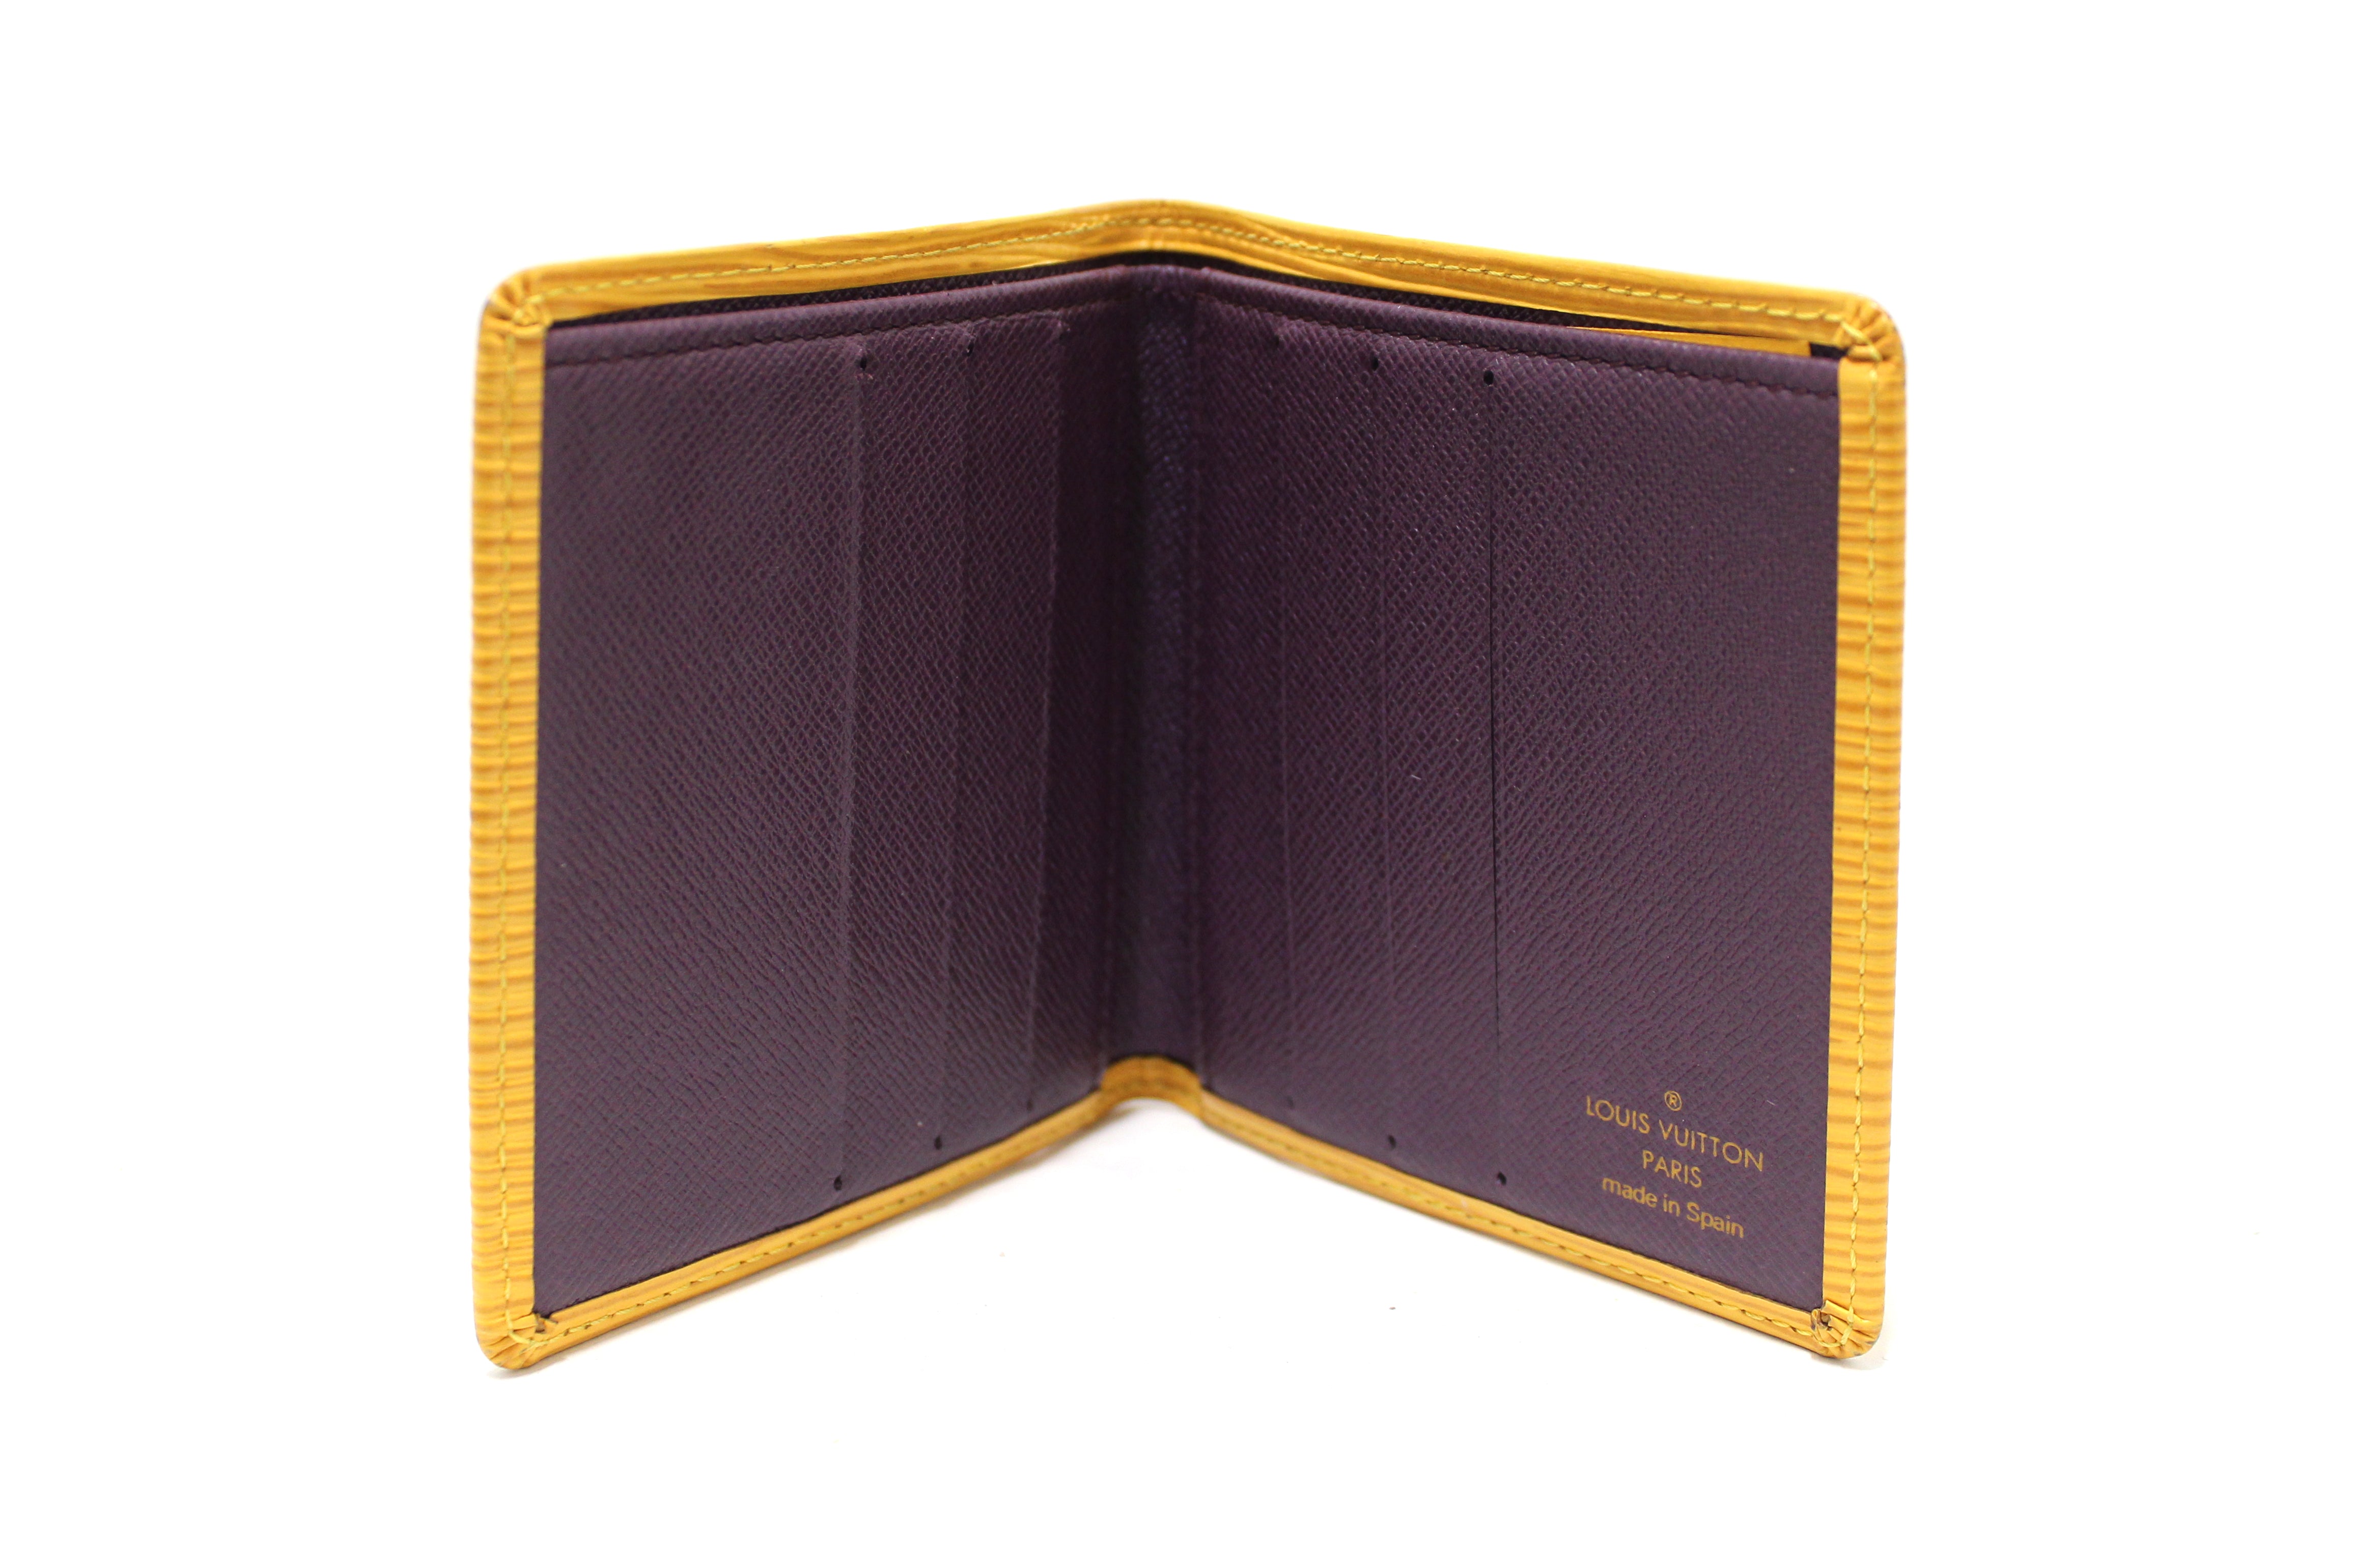 LV, Louis Vuitton Paris Men's Wallet Original Leather Made In Spain